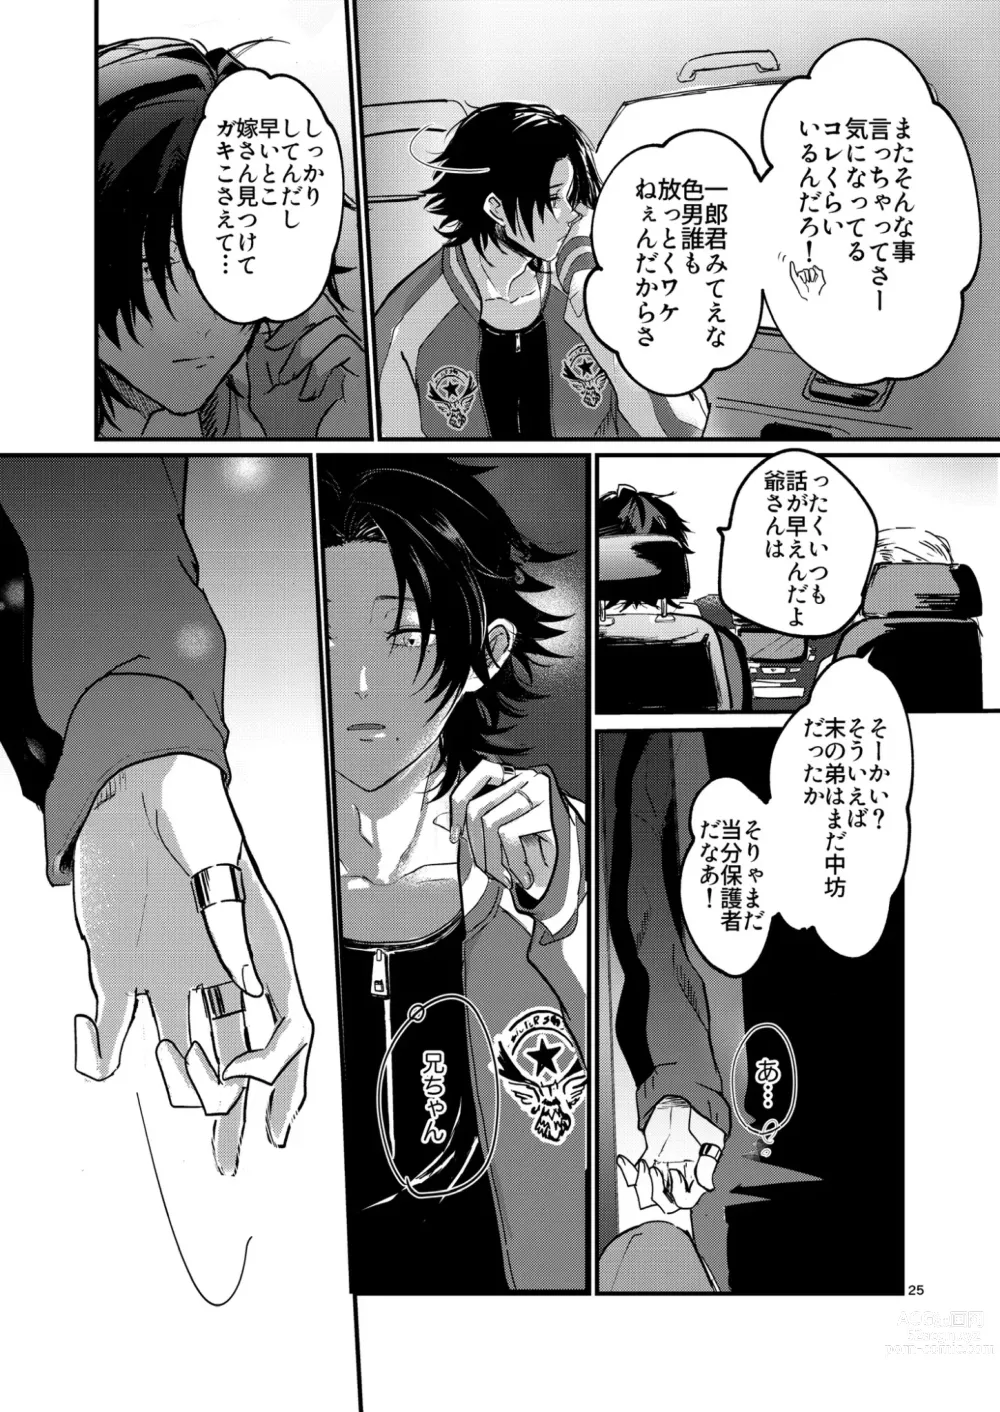 Page 24 of doujinshi Fukashin no Nichijou